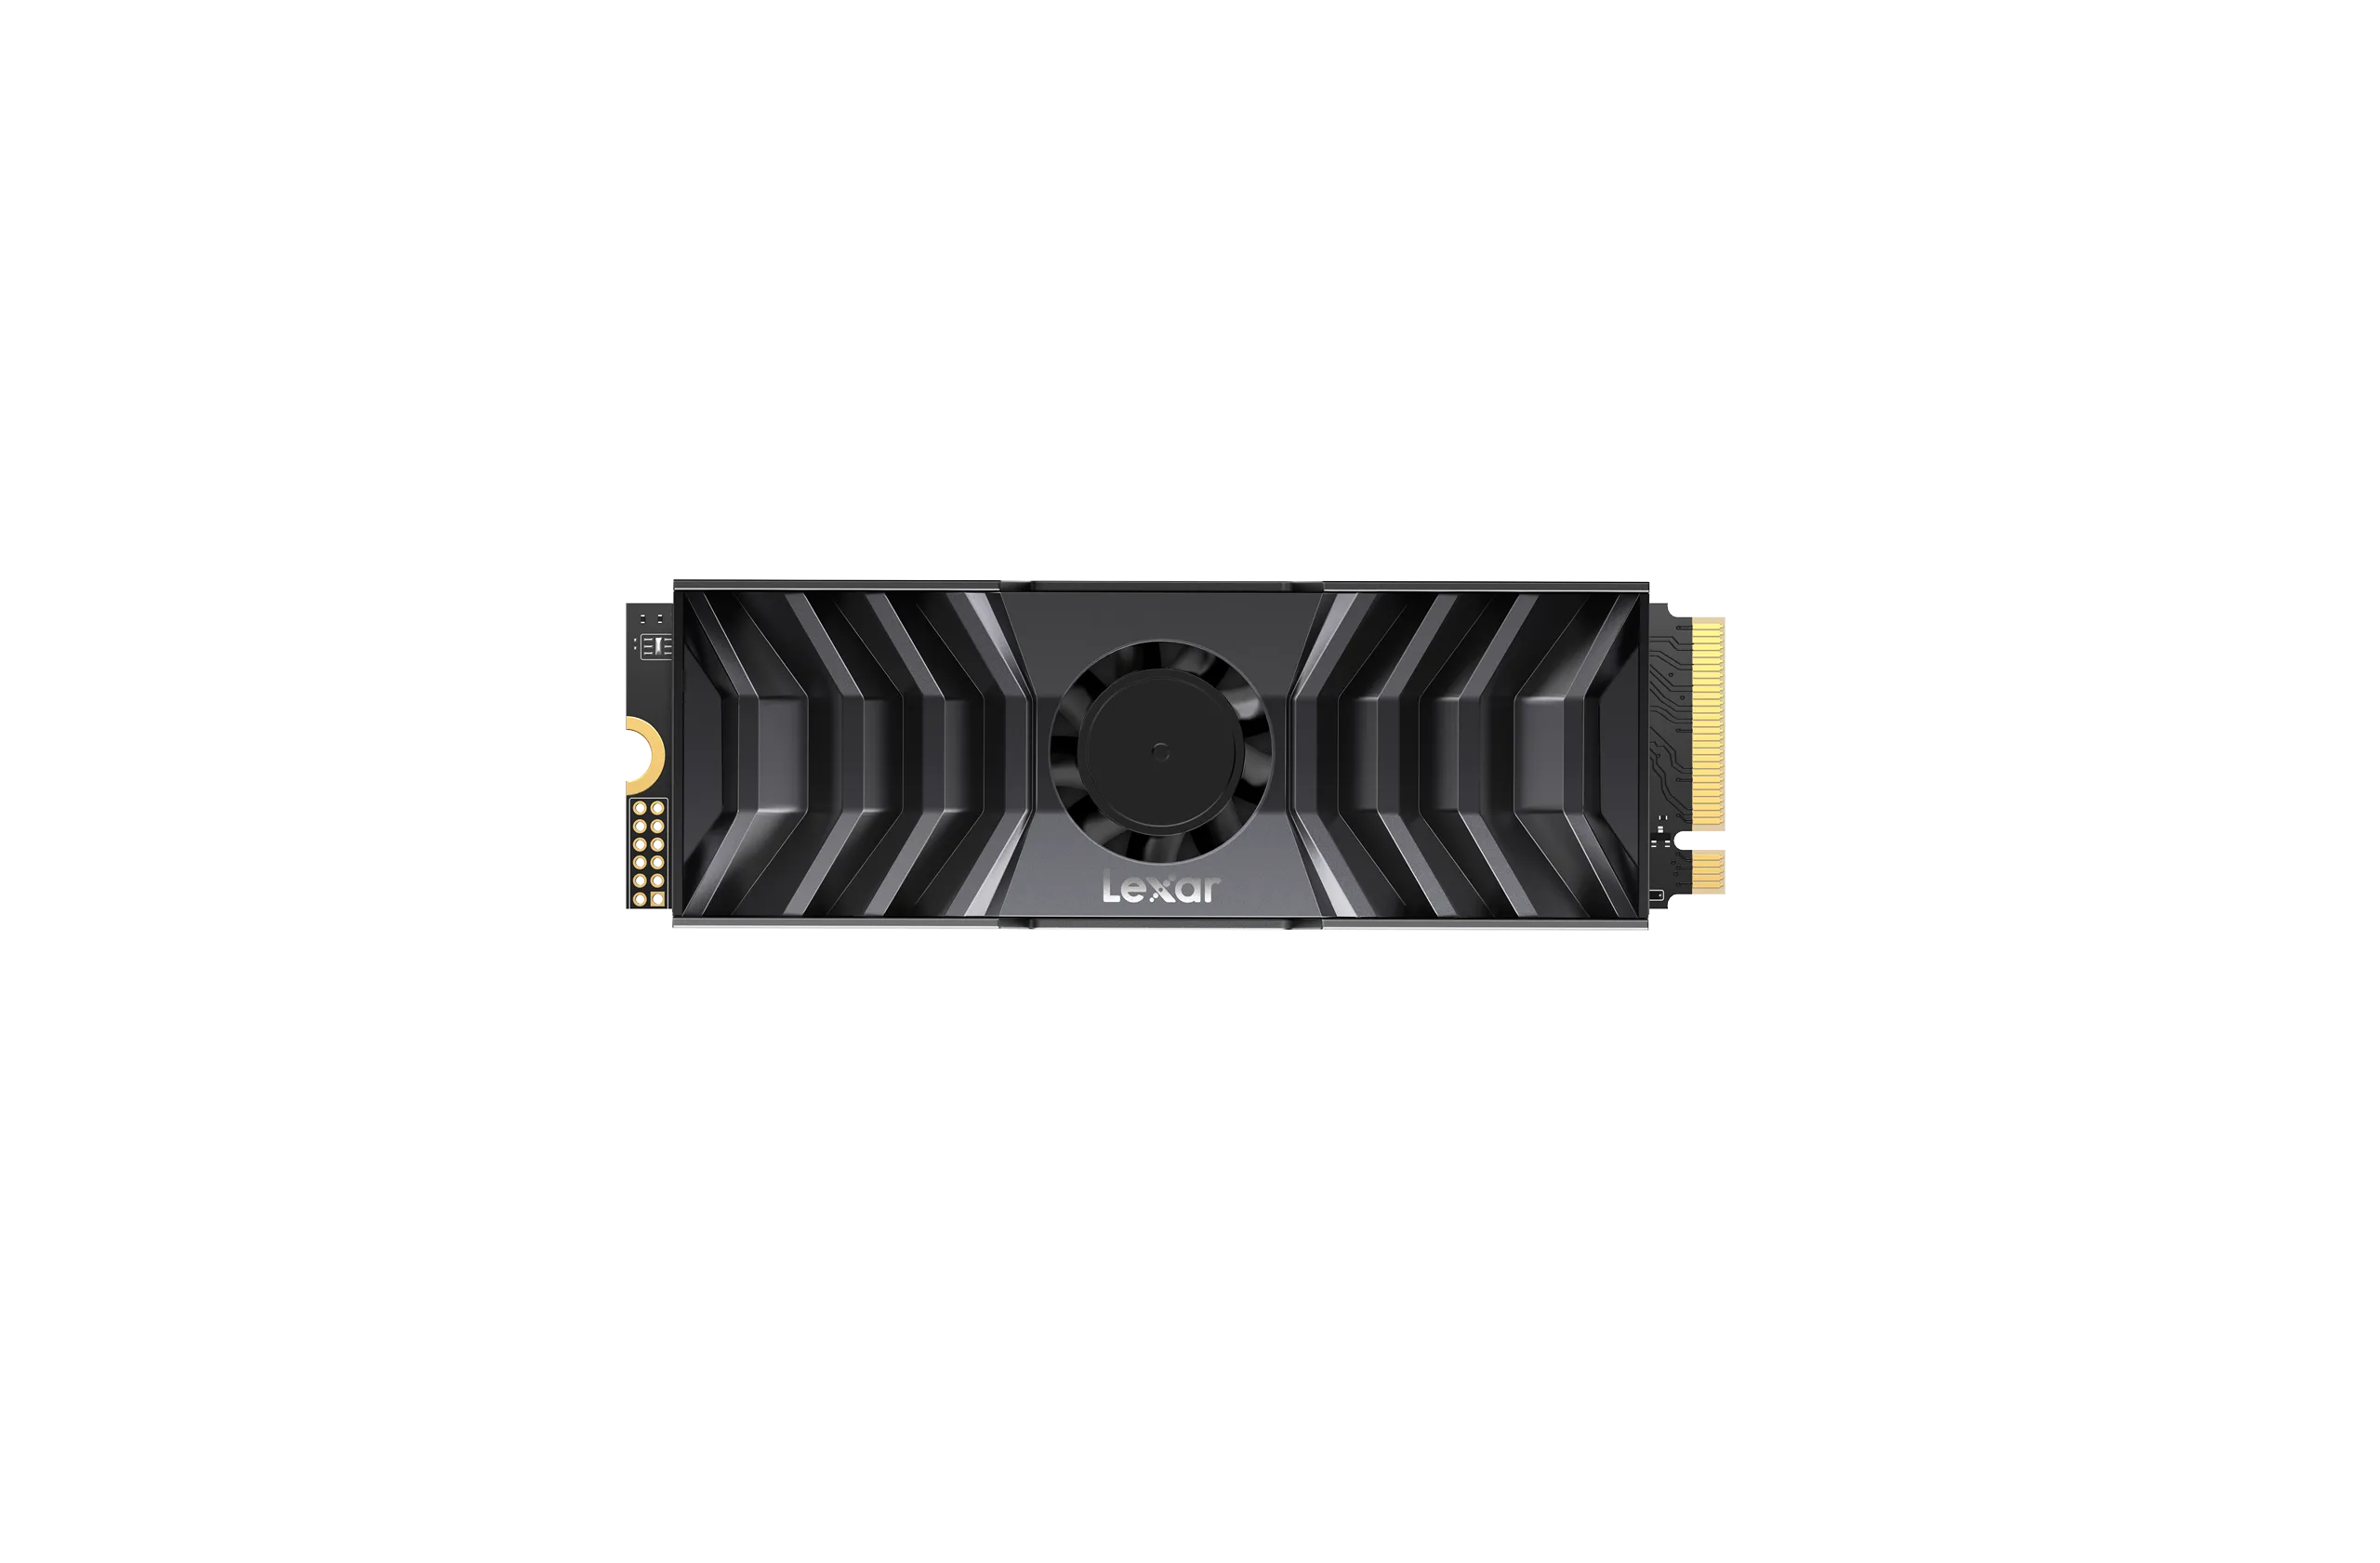 Lexar hé lộ loạt sản phẩm mới gồm RAM DDR5 và SSD tại Gamescom 2023